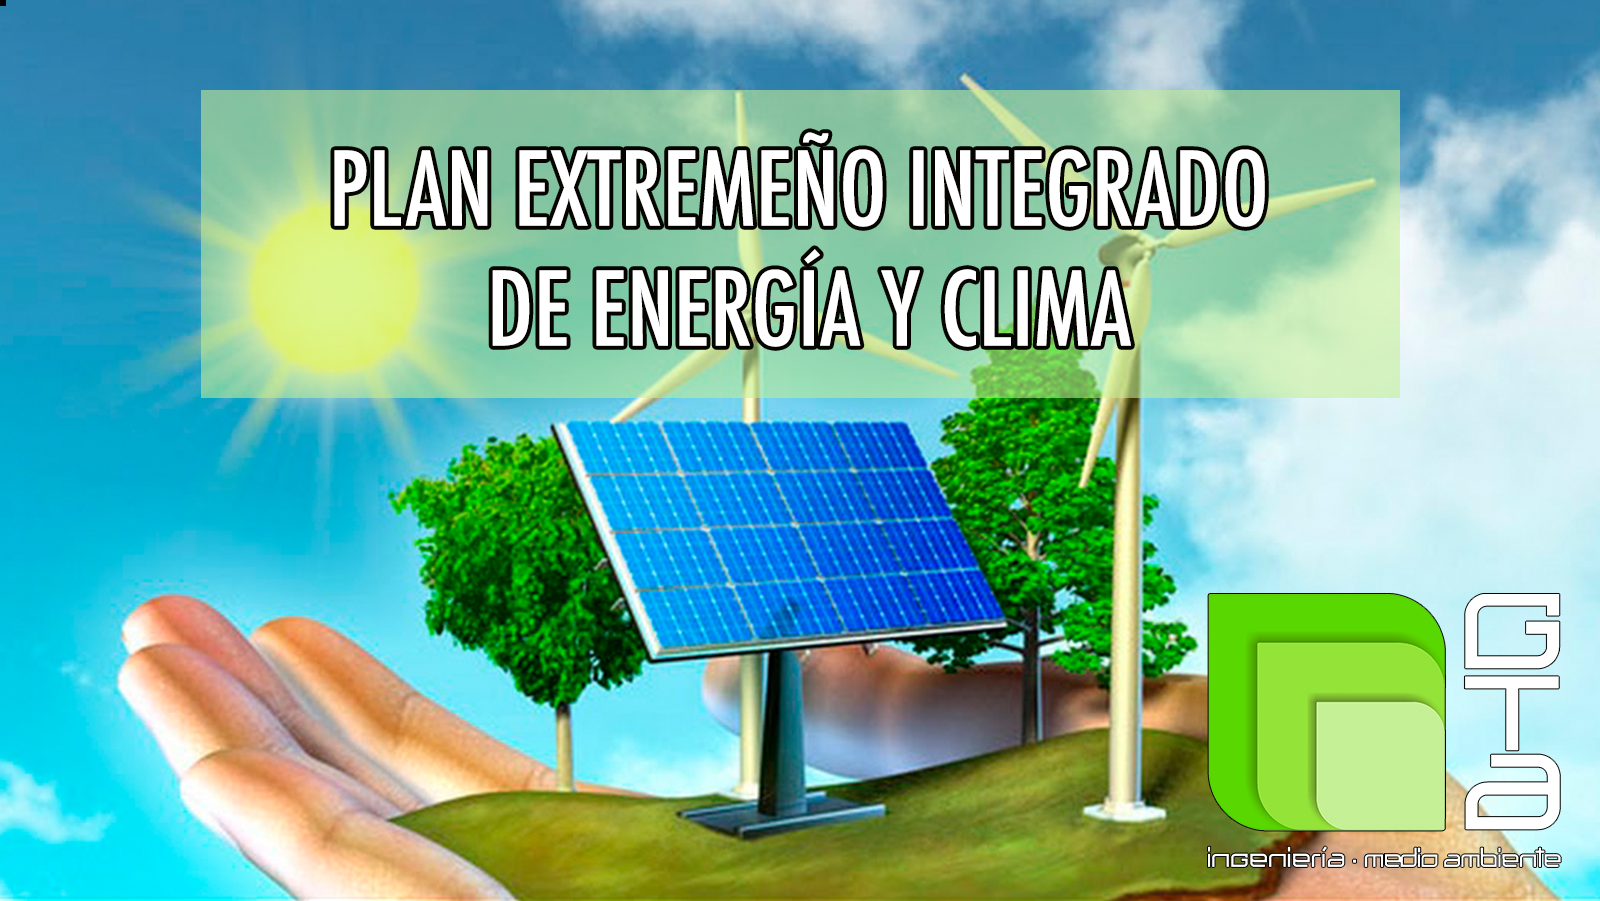 Plan Extremeño Integrado de Energía y Clima para luchar contra la emergencia climática (PEIEC).